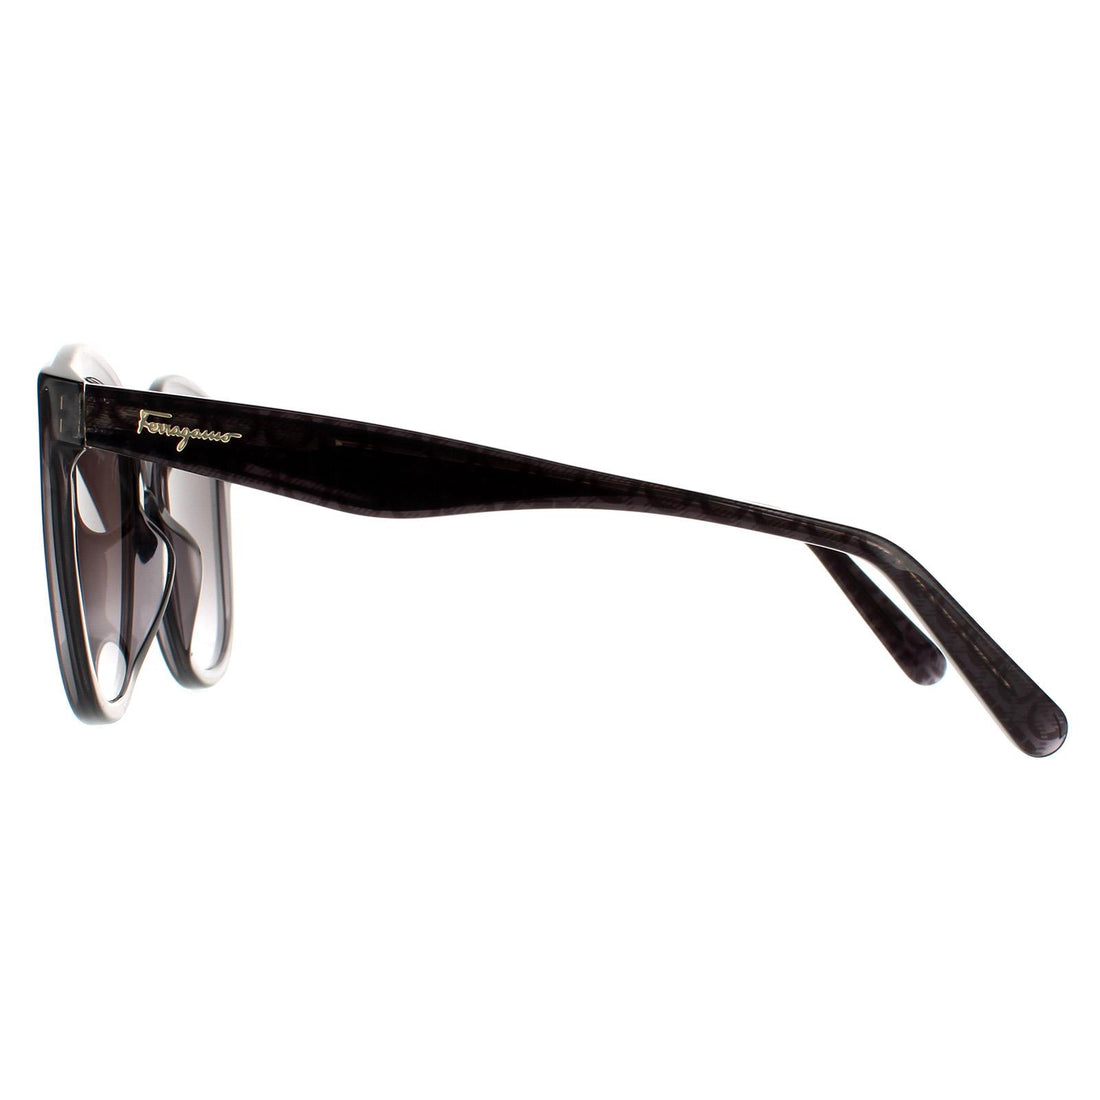 Salvatore Ferragamo SF977S Sunglasses